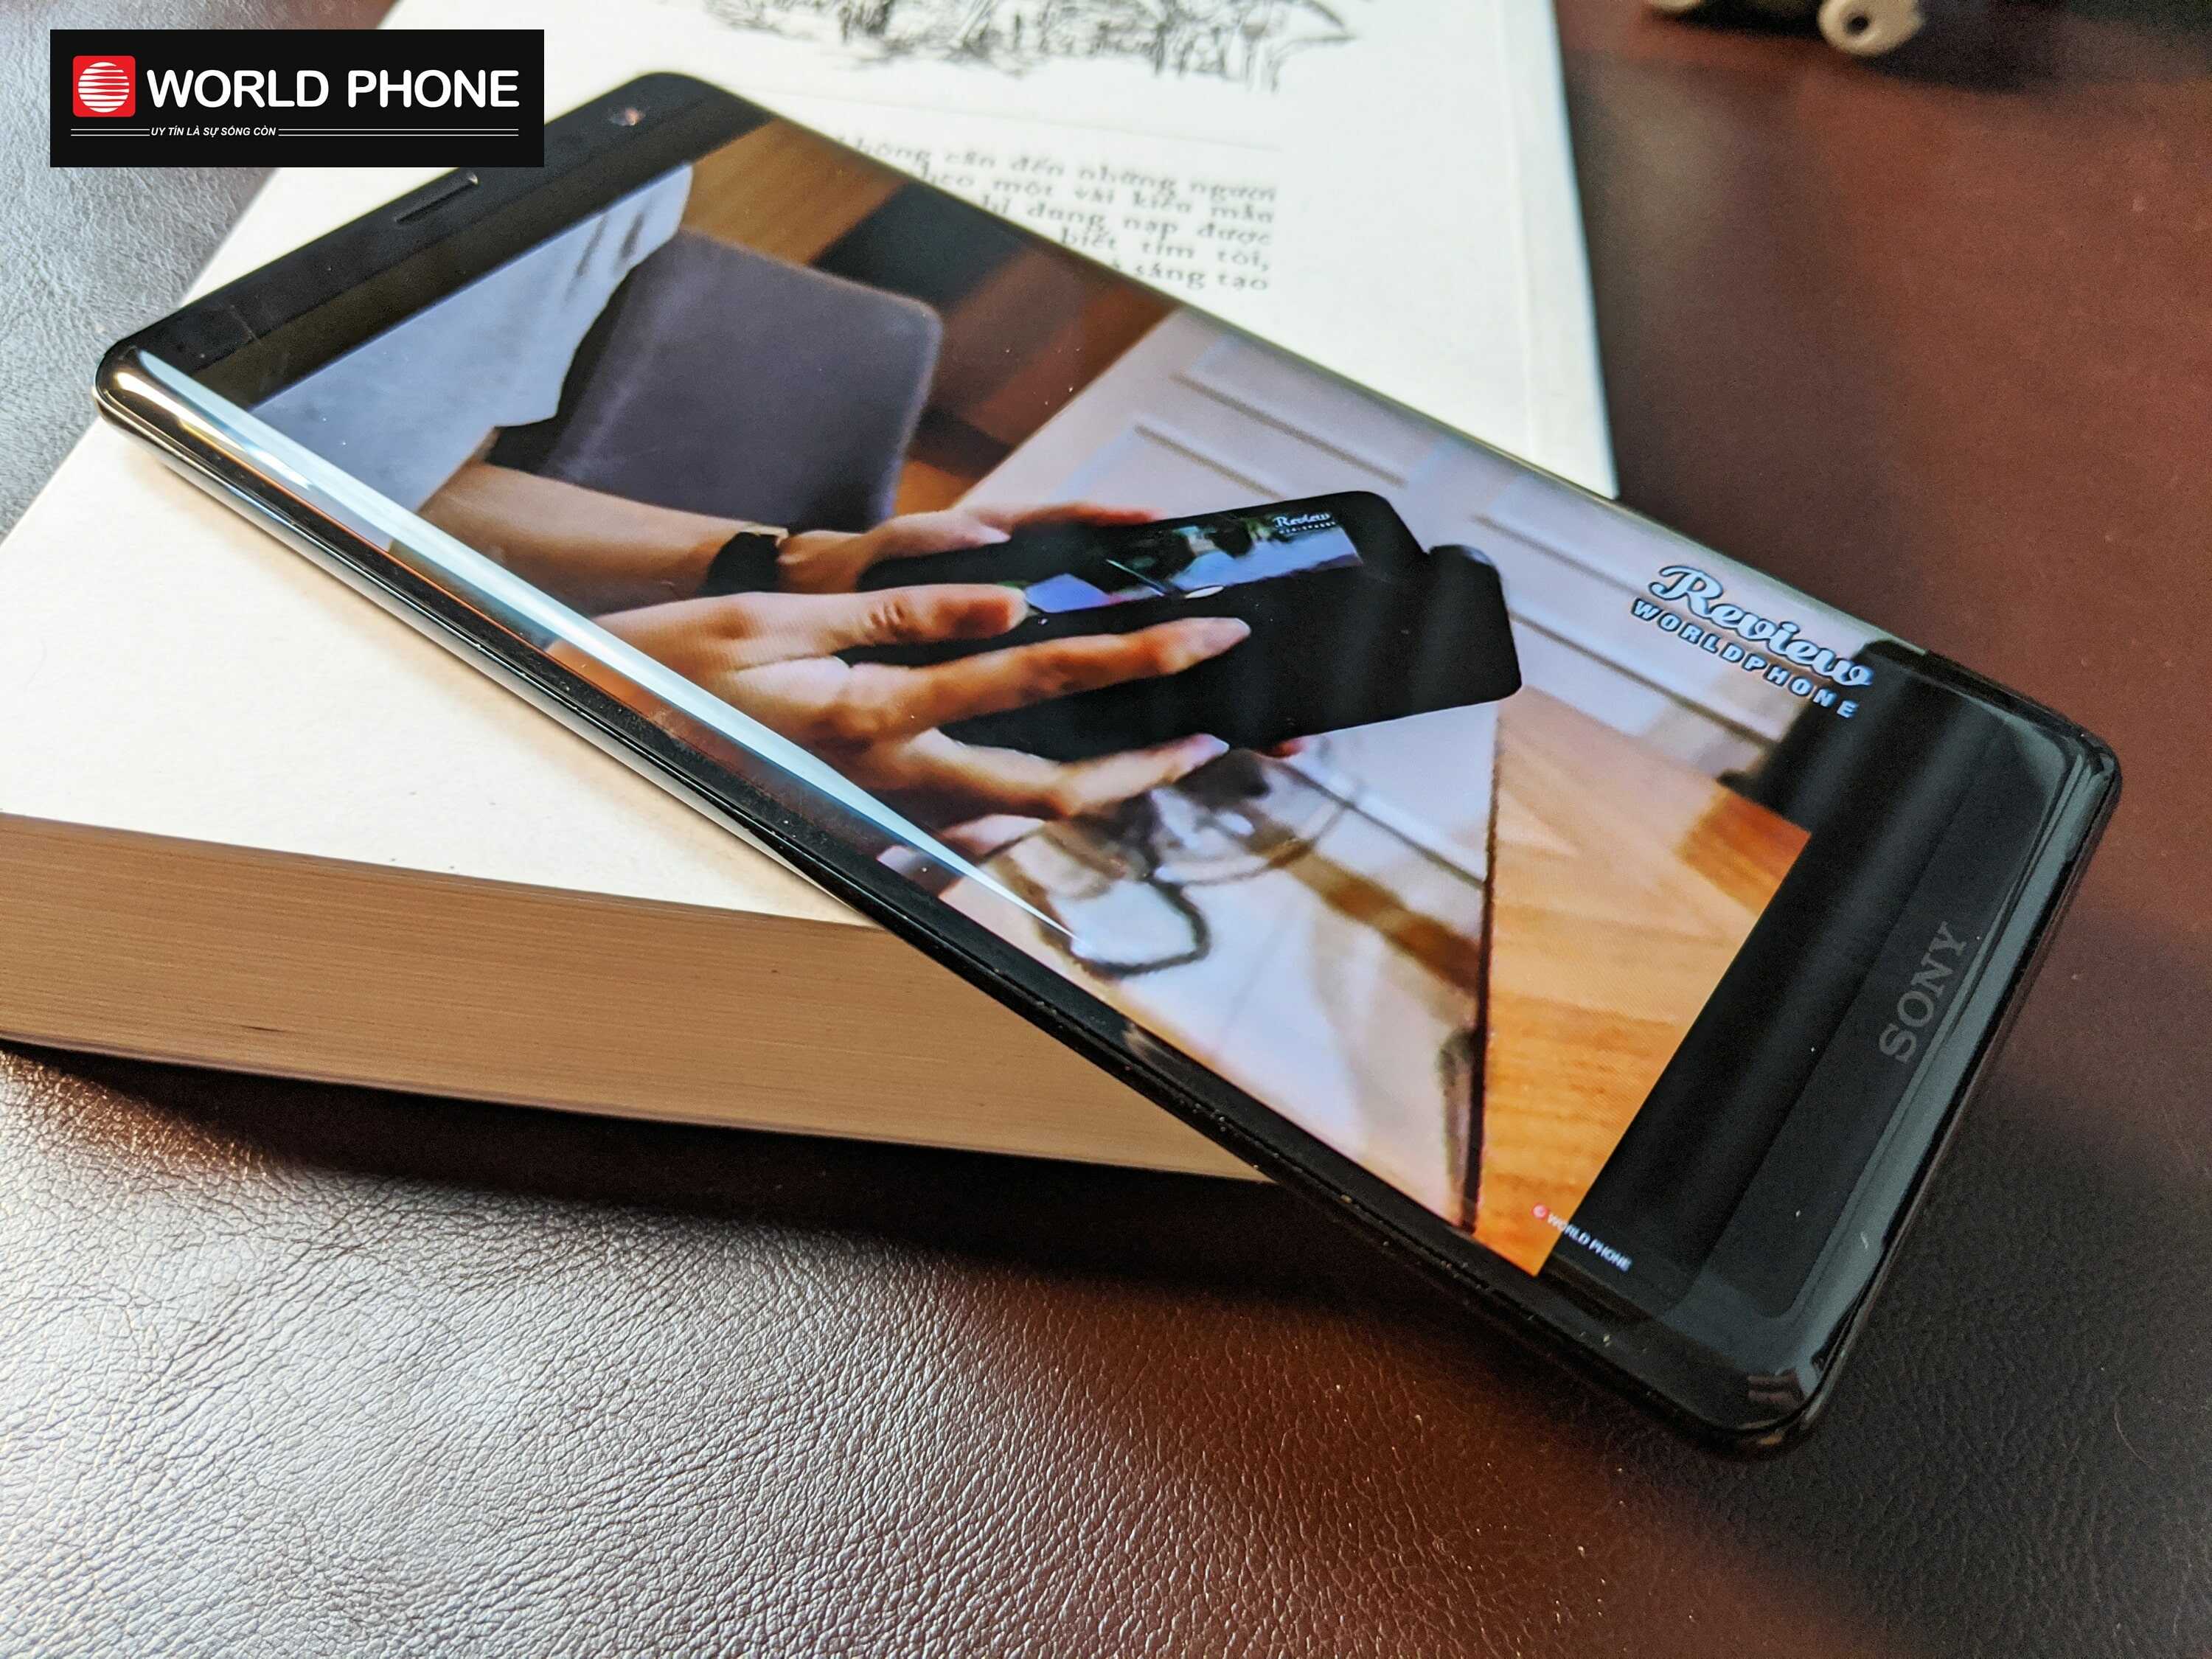 Sony Xperia XZ3 ra mắt với thiết kế "bóng loáng" và những nâng cấp vượt qua người tiền nhiệm mới ra mắt cách đó chưa lâu